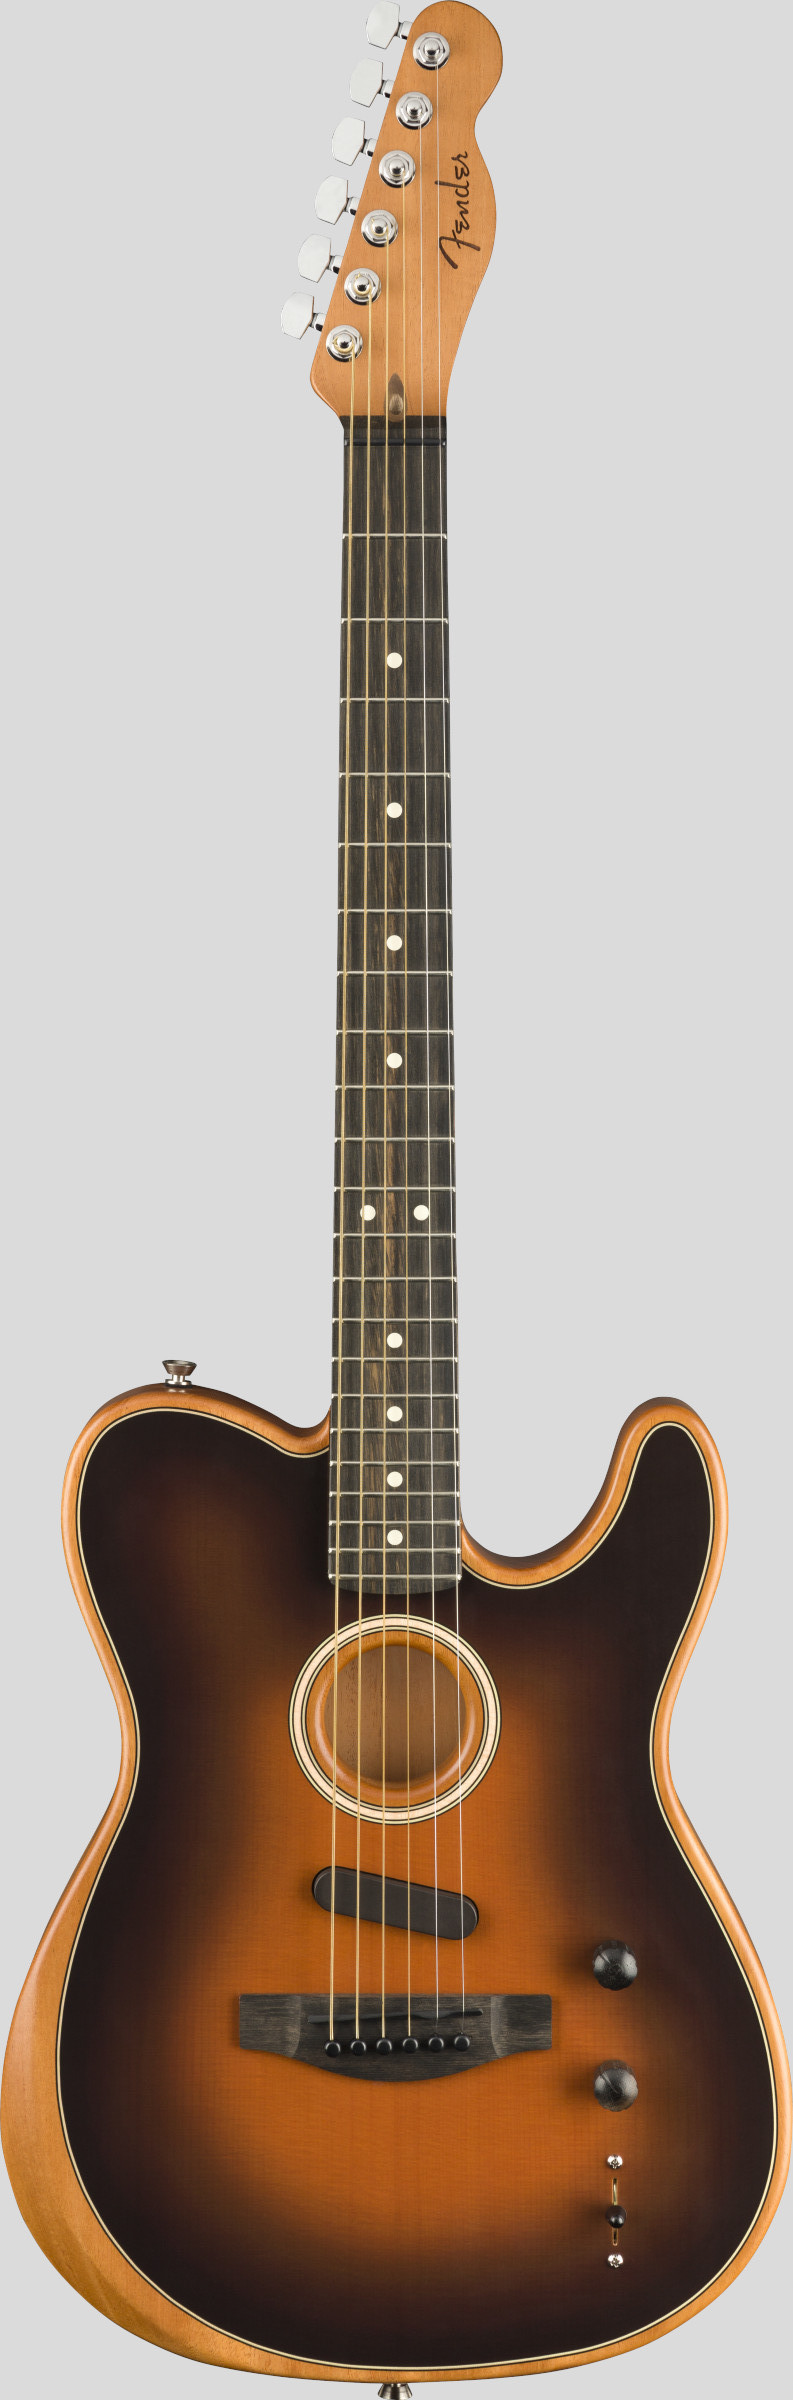 Fender American Acoustasonic Telecaster Sunburst 1